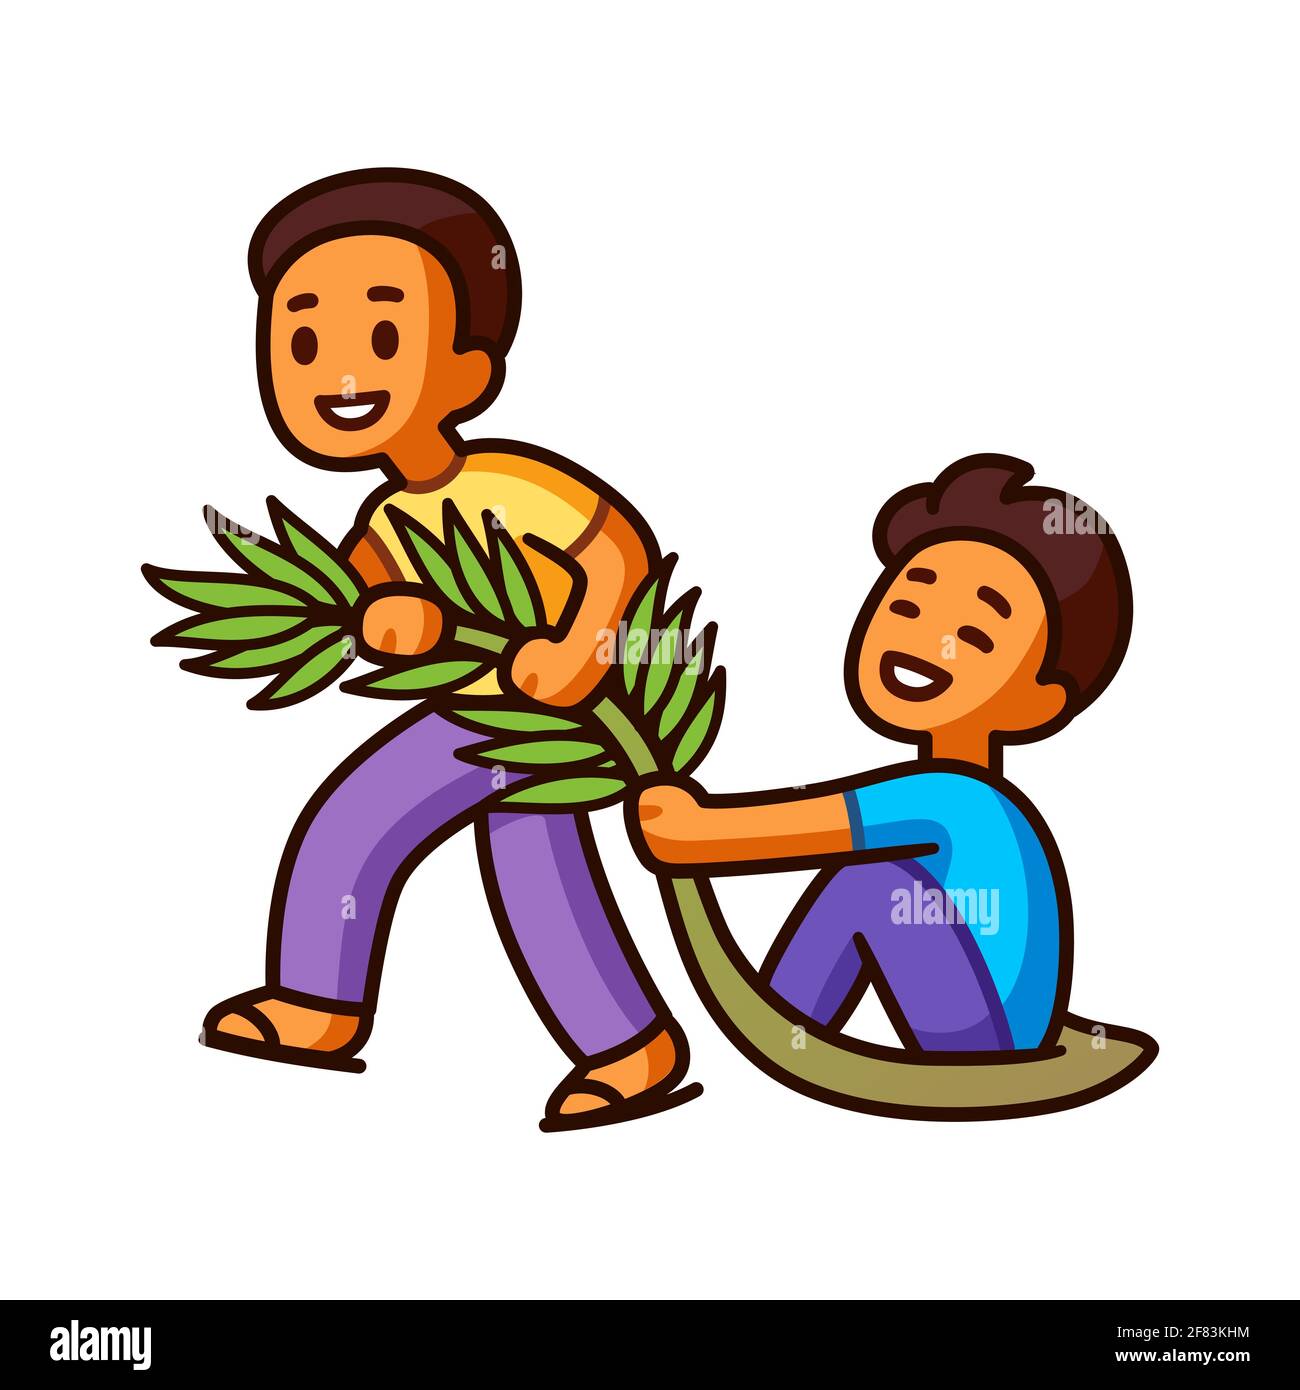 Tarik upih, tradizionale gioco malese di sledding fronte palme. Due simpatici ragazzi fumetti che si divertono. Immagine vettoriale clip art. Illustrazione Vettoriale